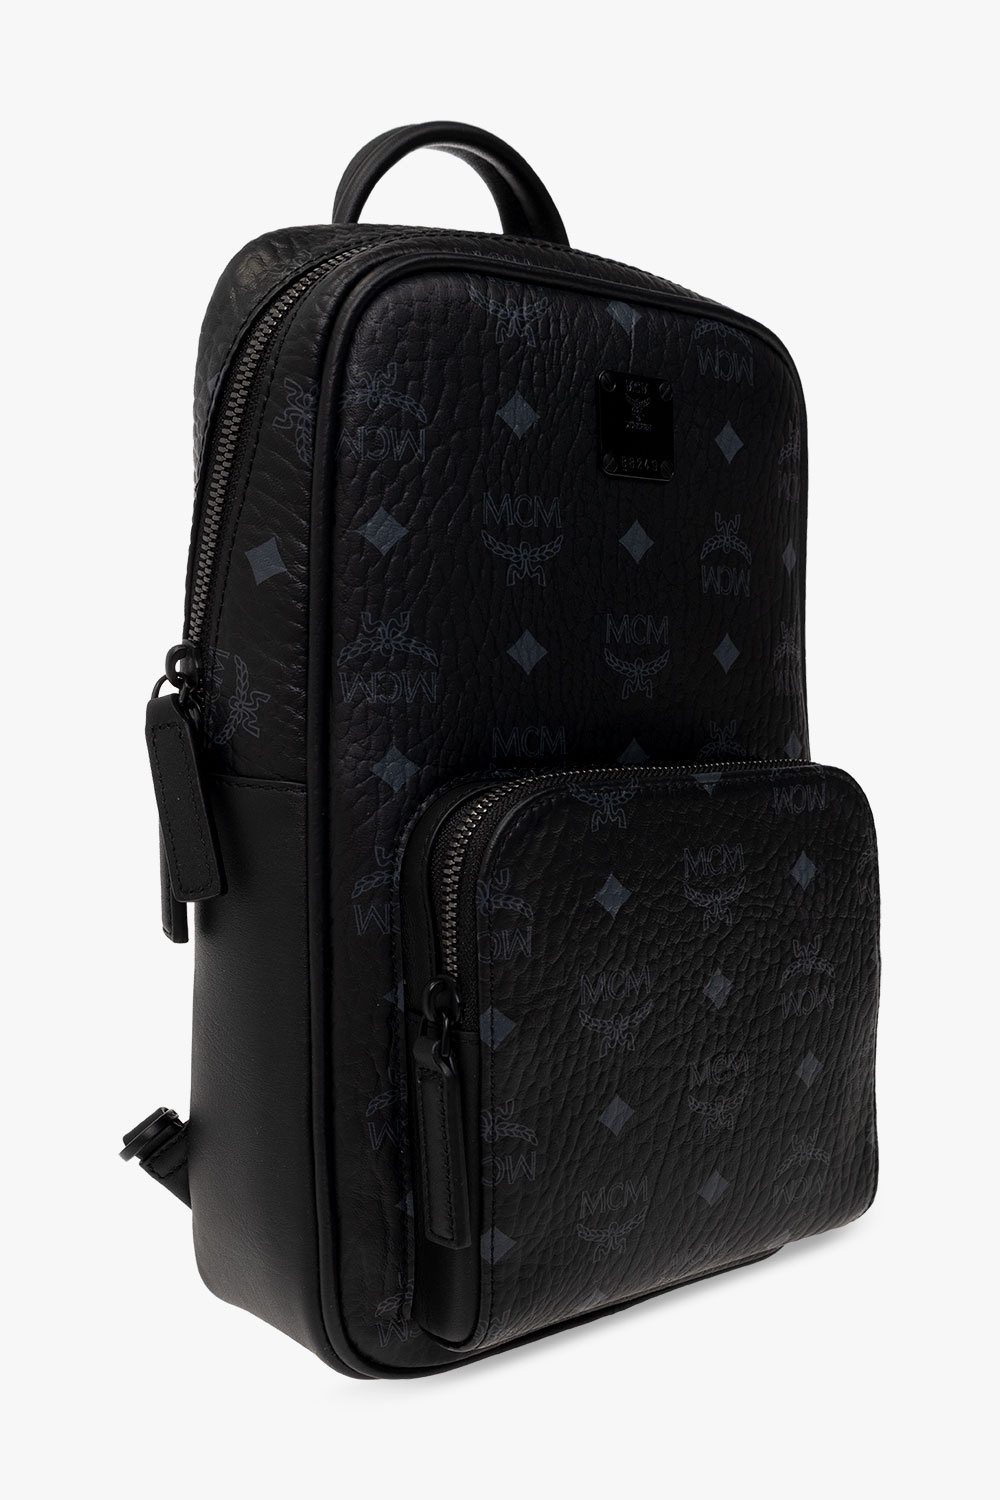 MCM One-shoulder backpack